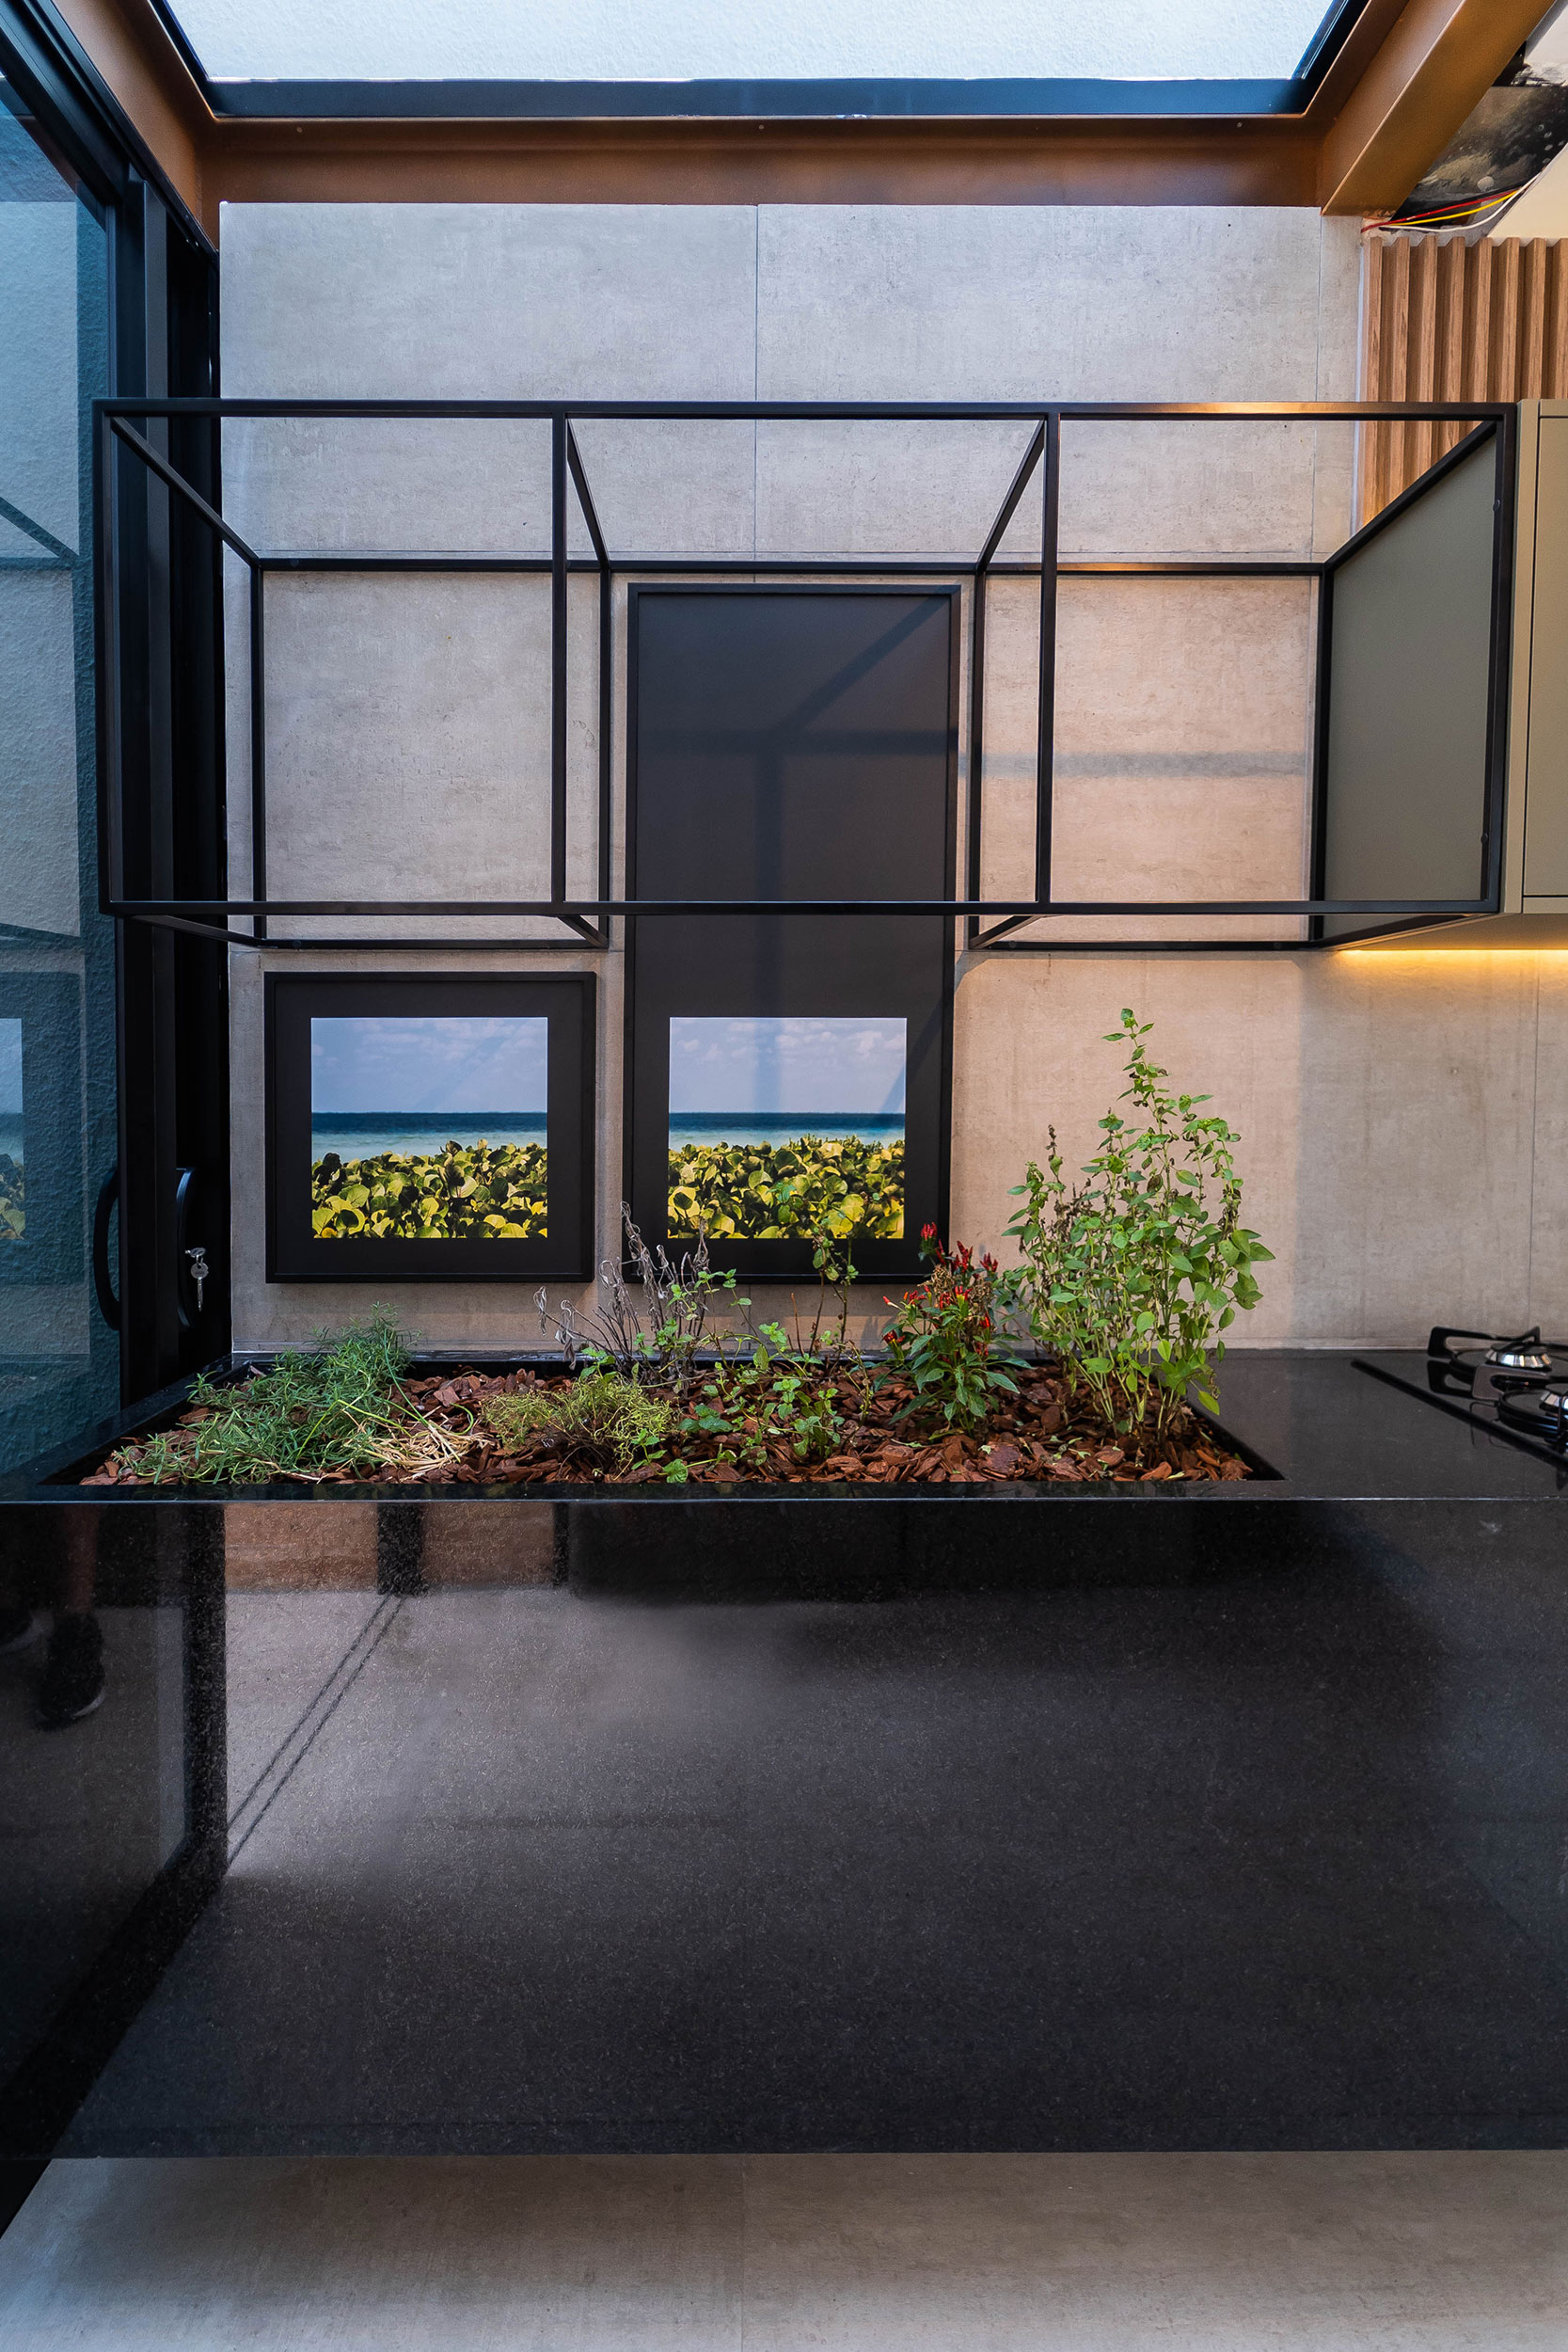 Jardim Pequeno - Com uma abertura no teto para a entrada de luz, e ao lado de uma área externa, esta horta priorizou a praticidade ao lado do fogão (Foto: VICTOR ROMANSINI/Archtrends)